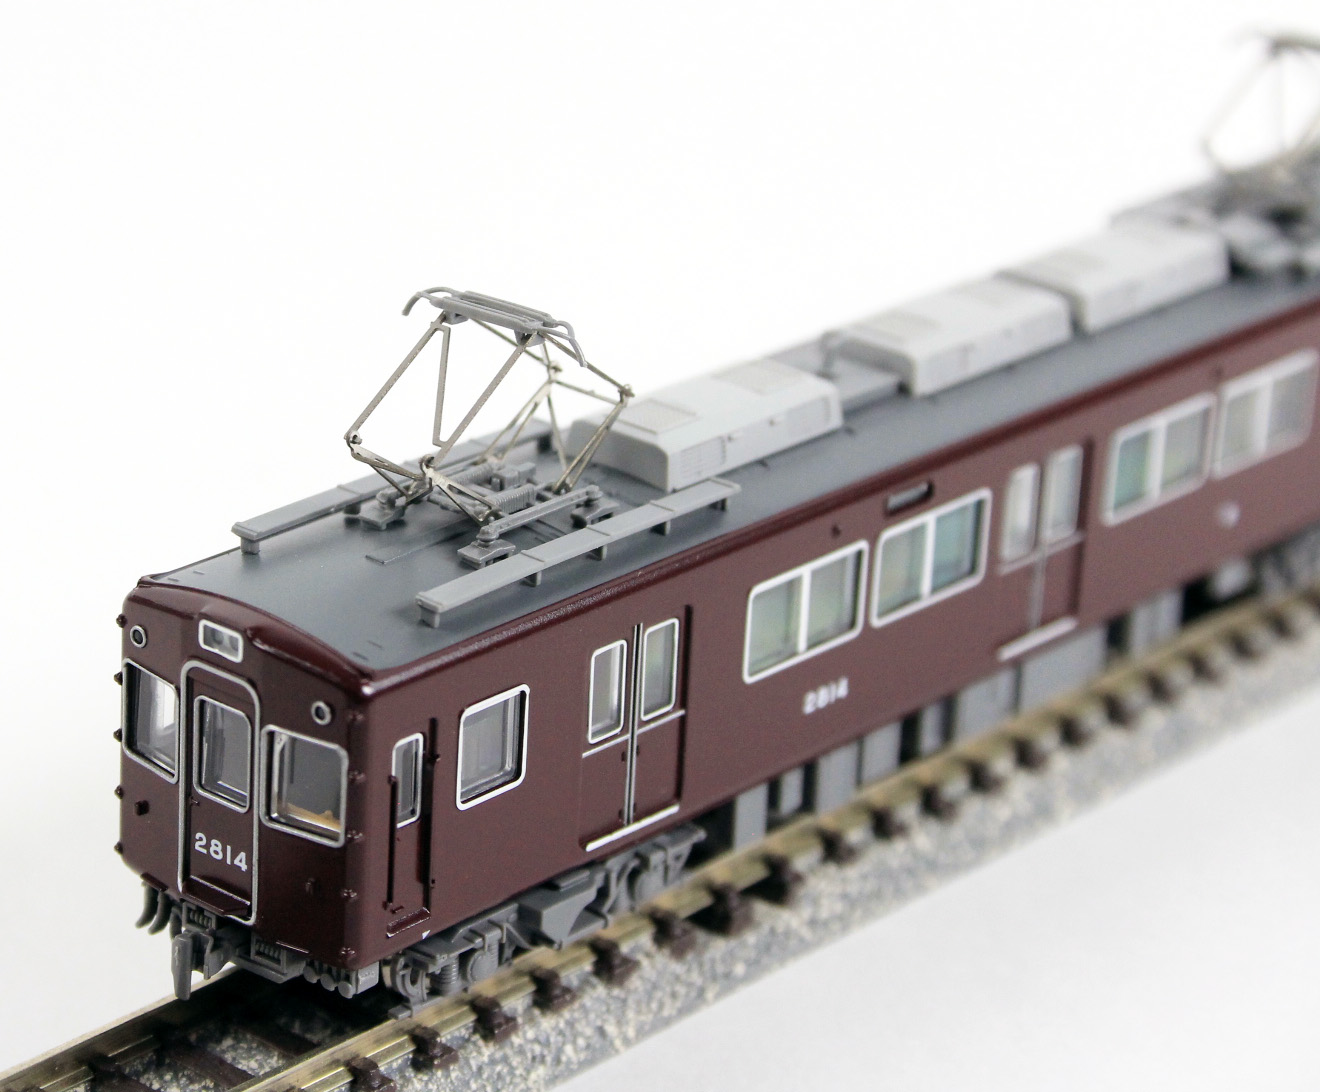 マイクロエース A1994 阪急電鉄2800系 冷改 3扉 基本4両セット 鉄道 